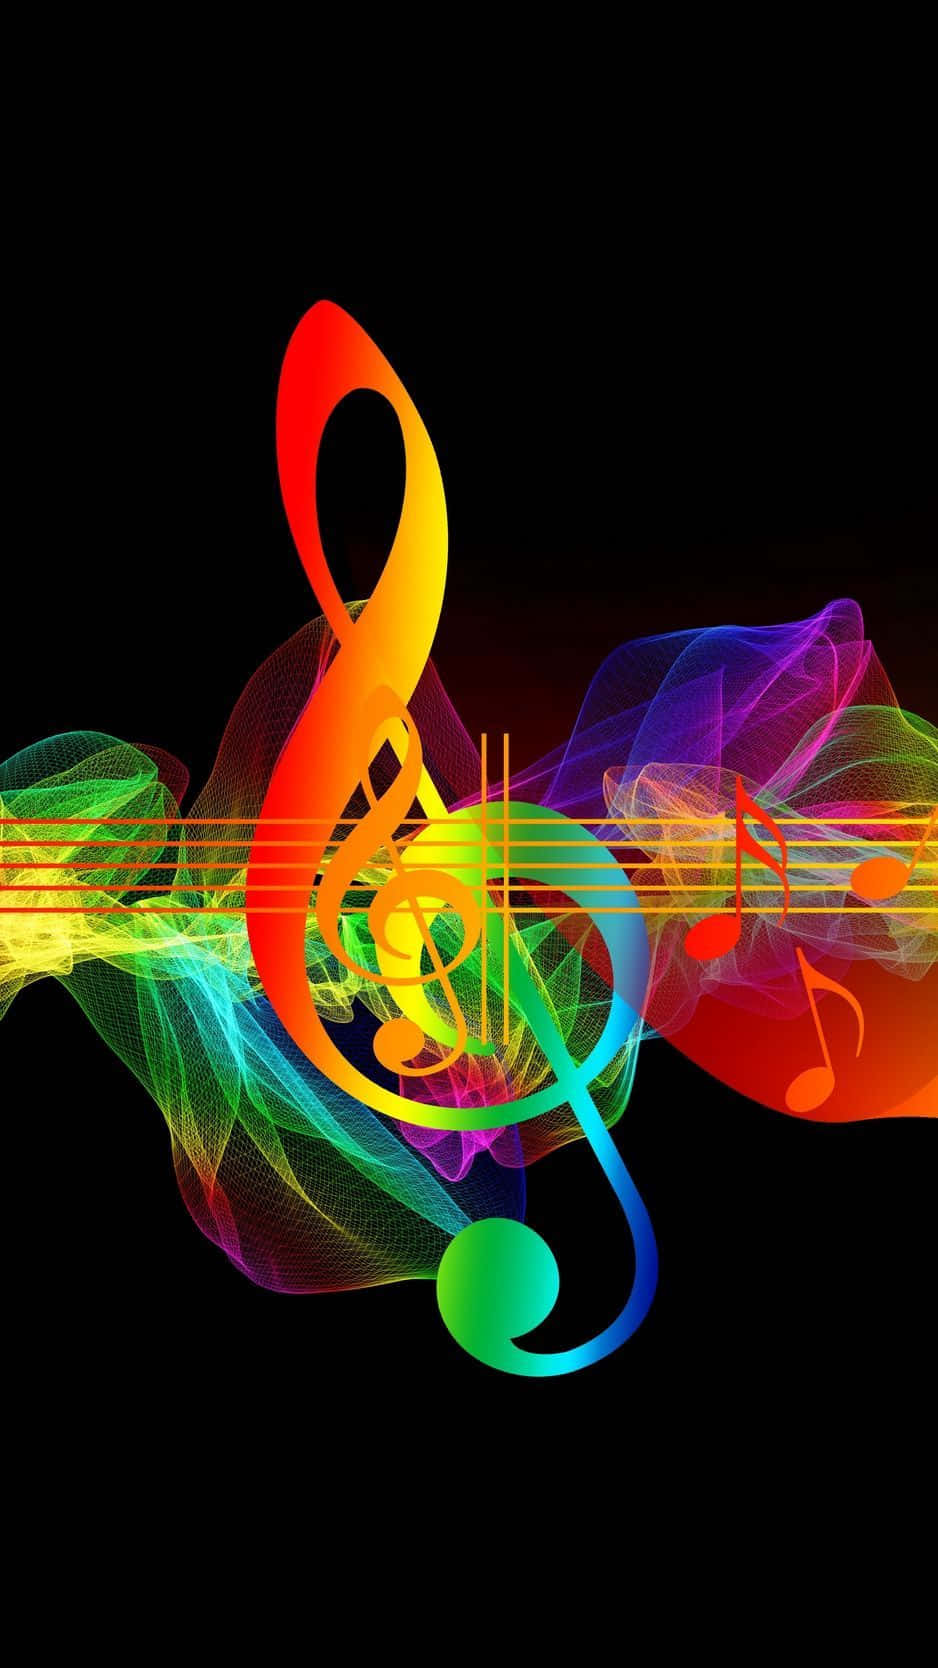 Unosfondo Musicale Mozzafiato Con Spruzzi Di Colore Vibranti E Una Tastiera Del Pianoforte.